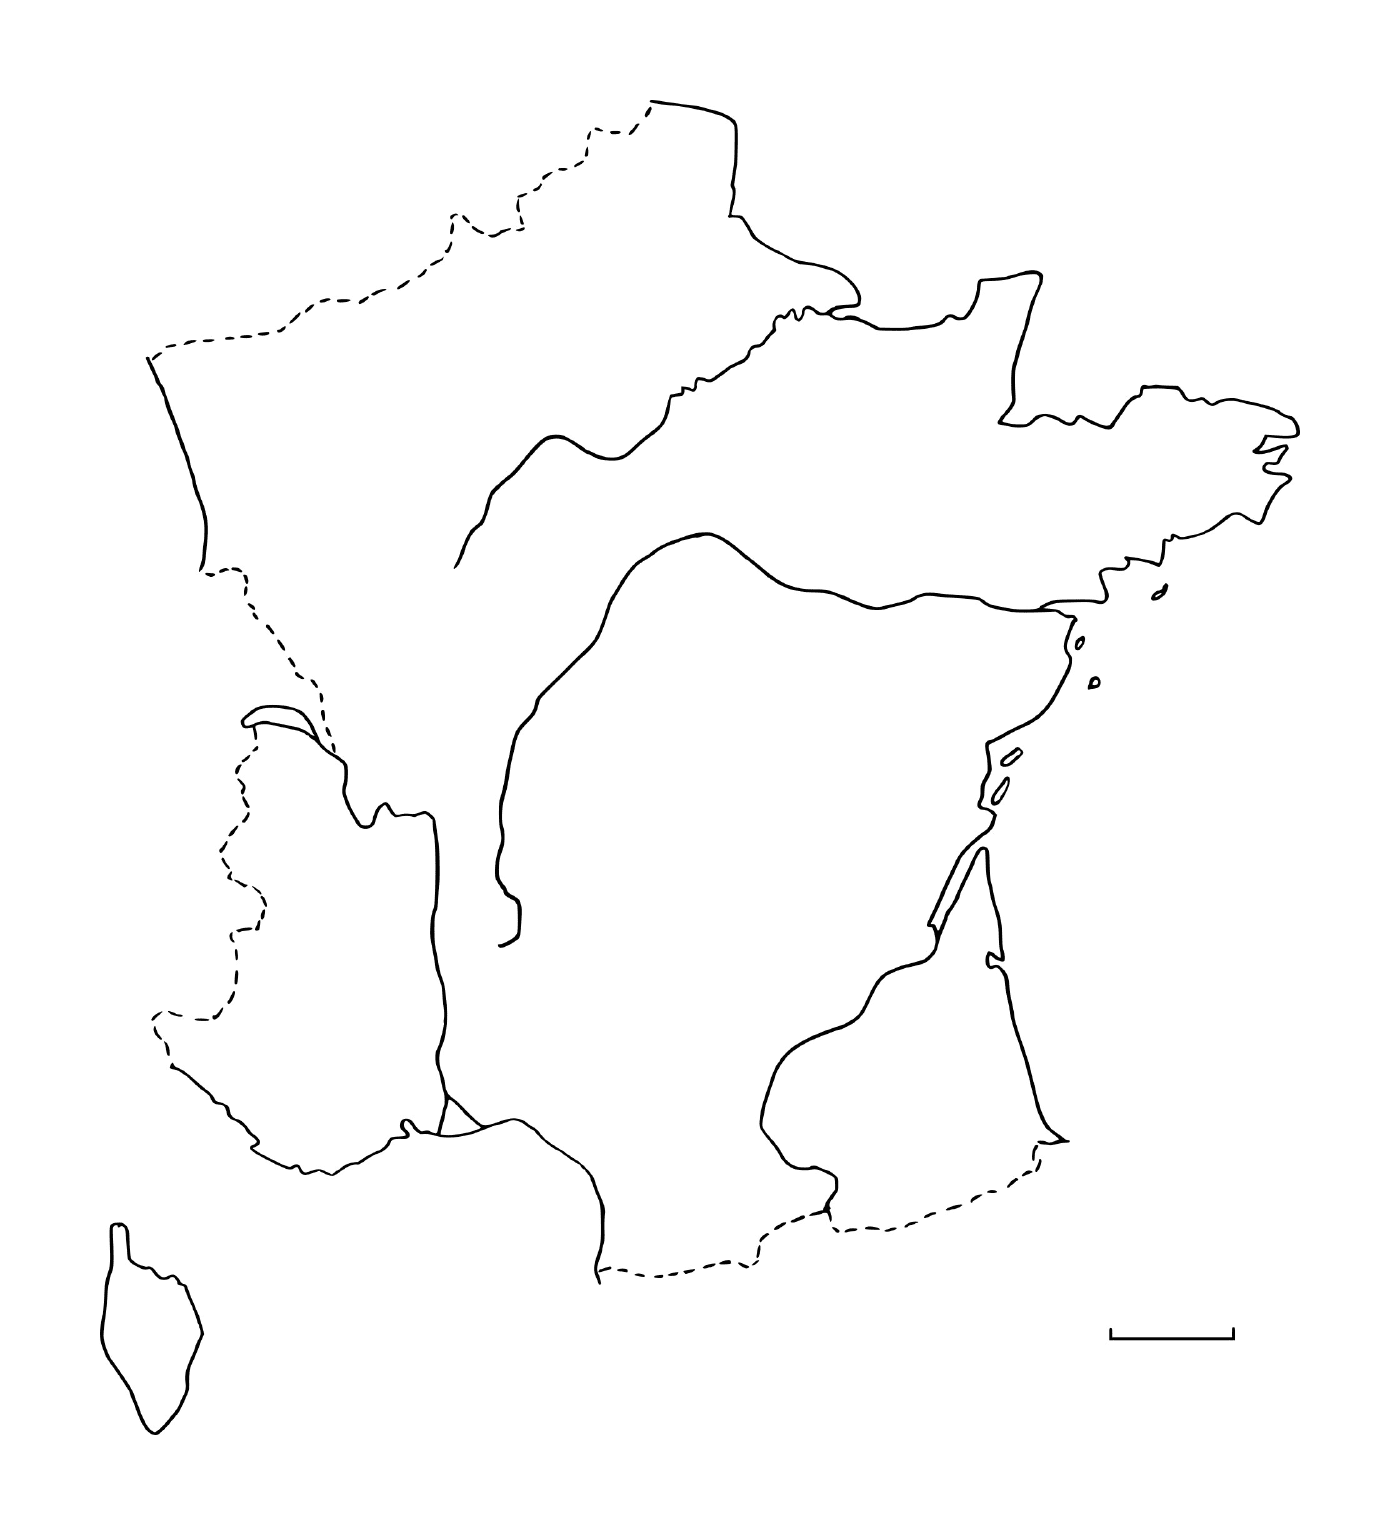  Карта девственности Франции 